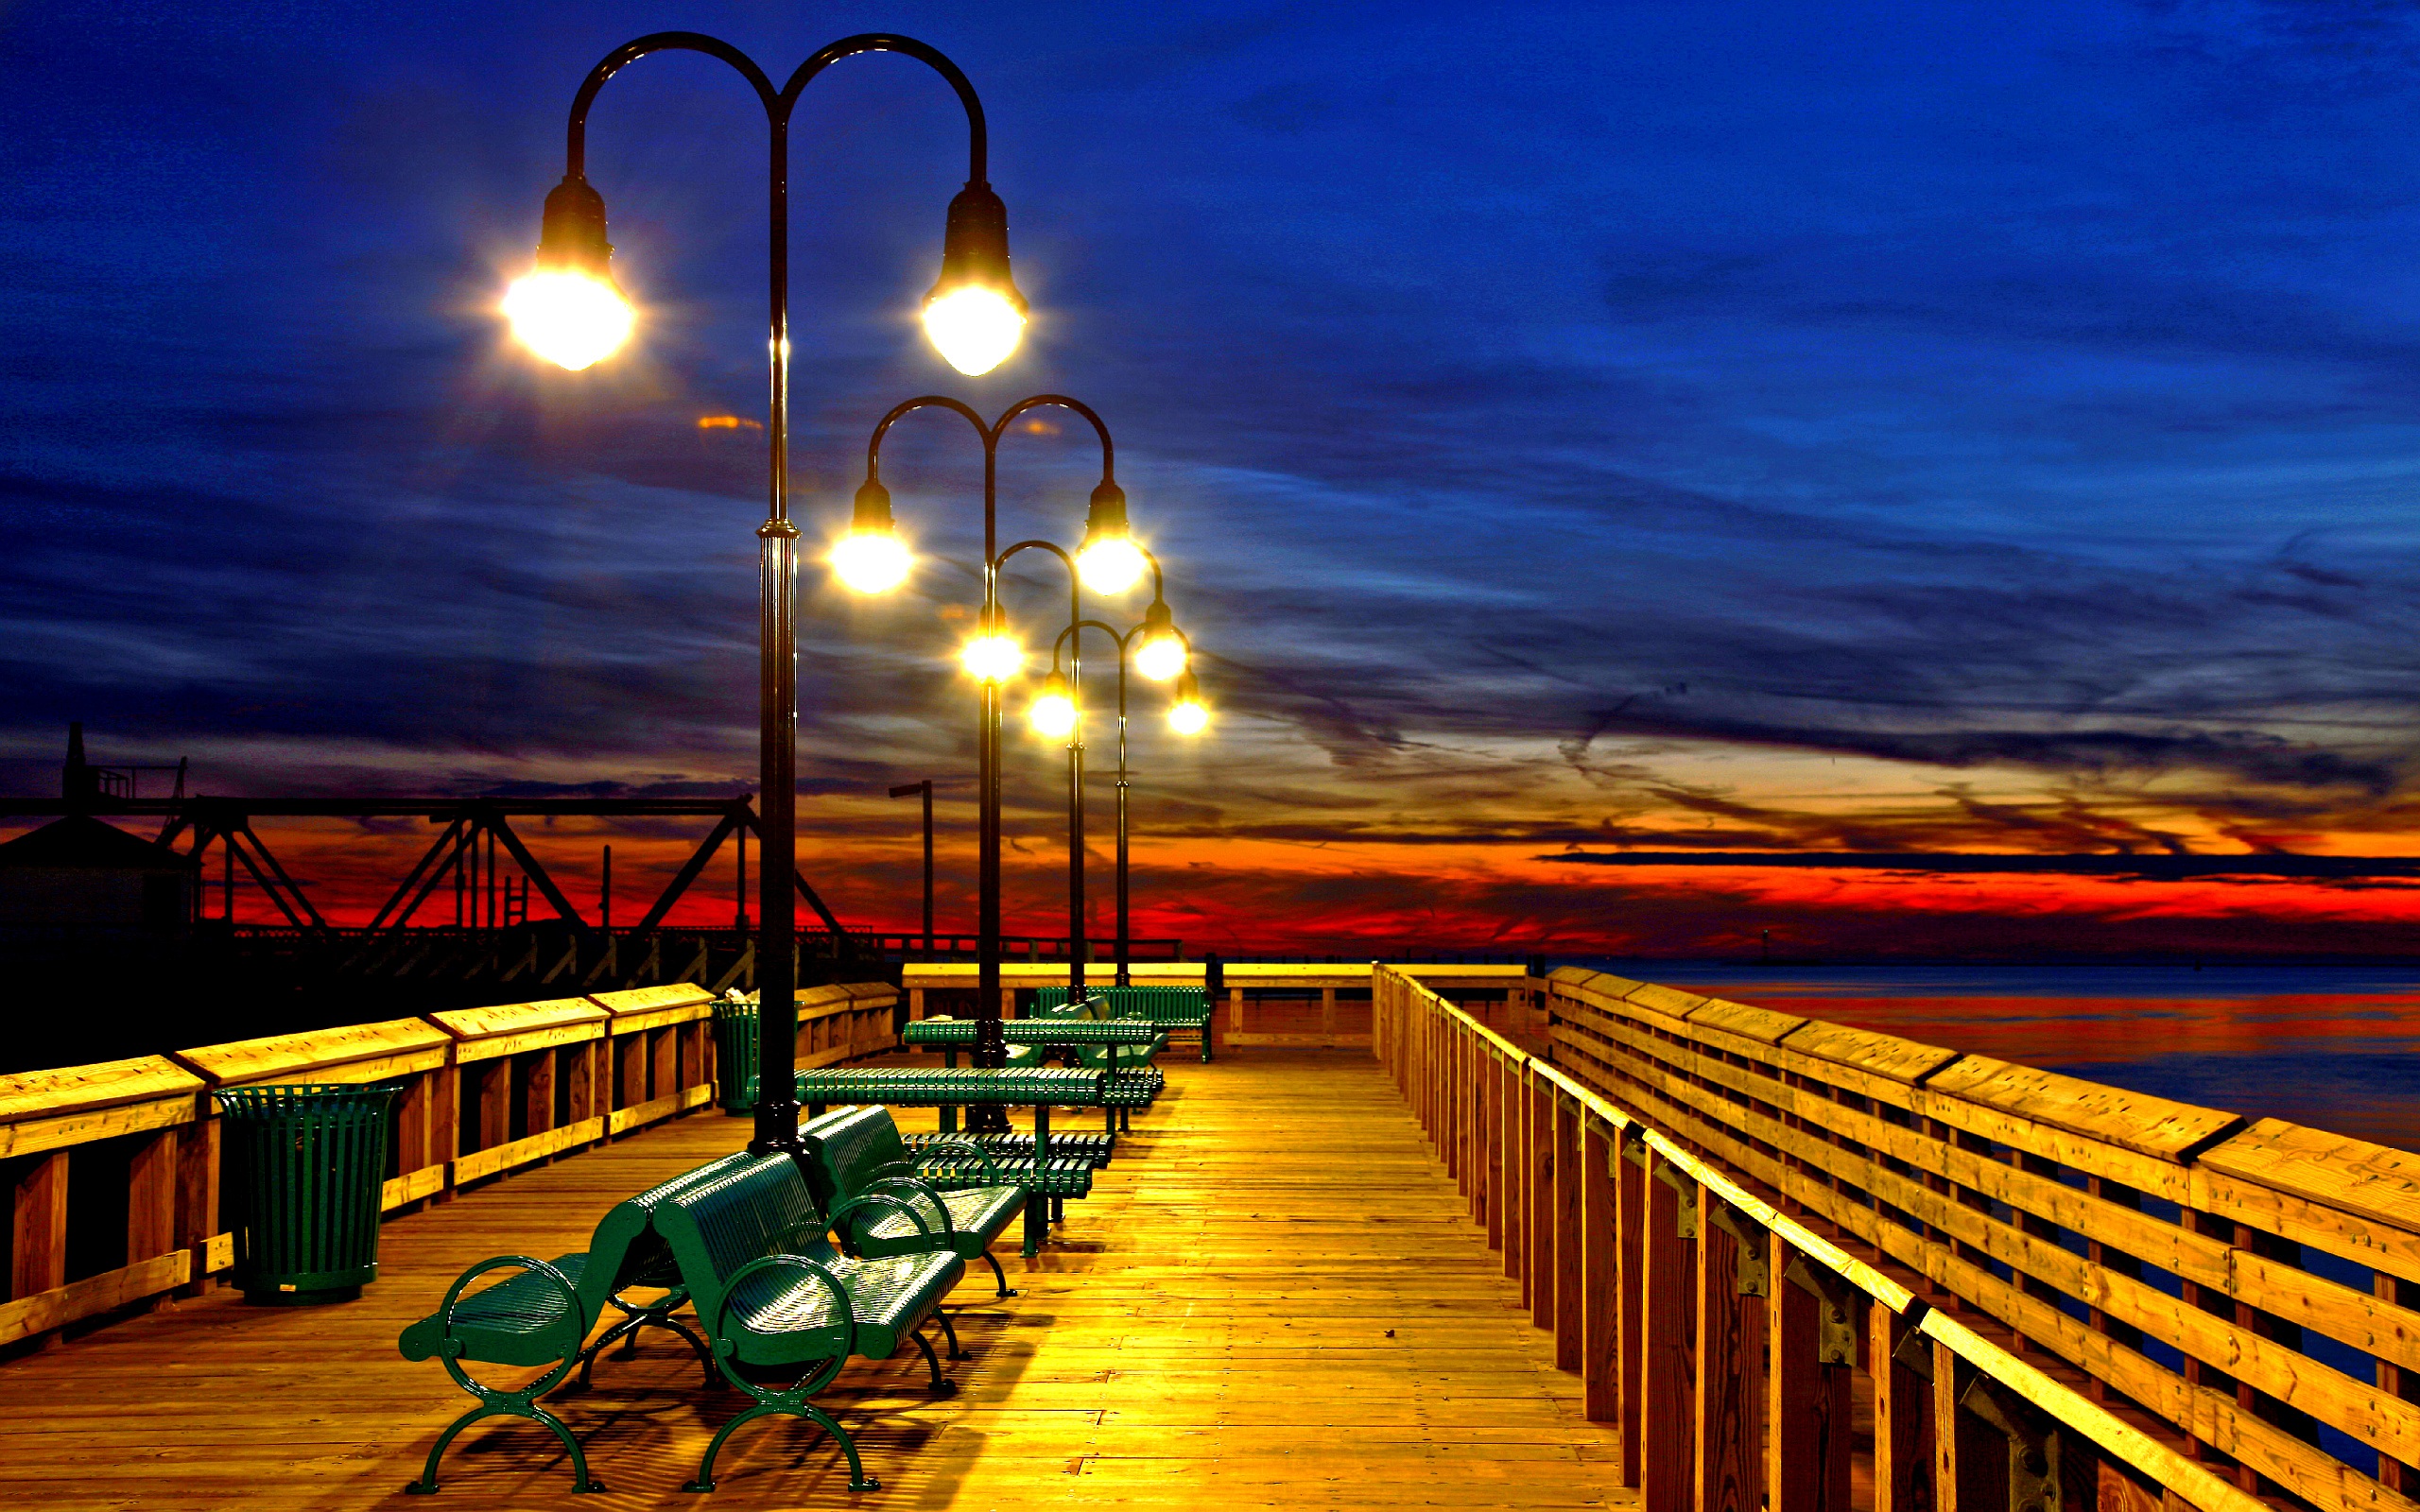 Romantic Pier